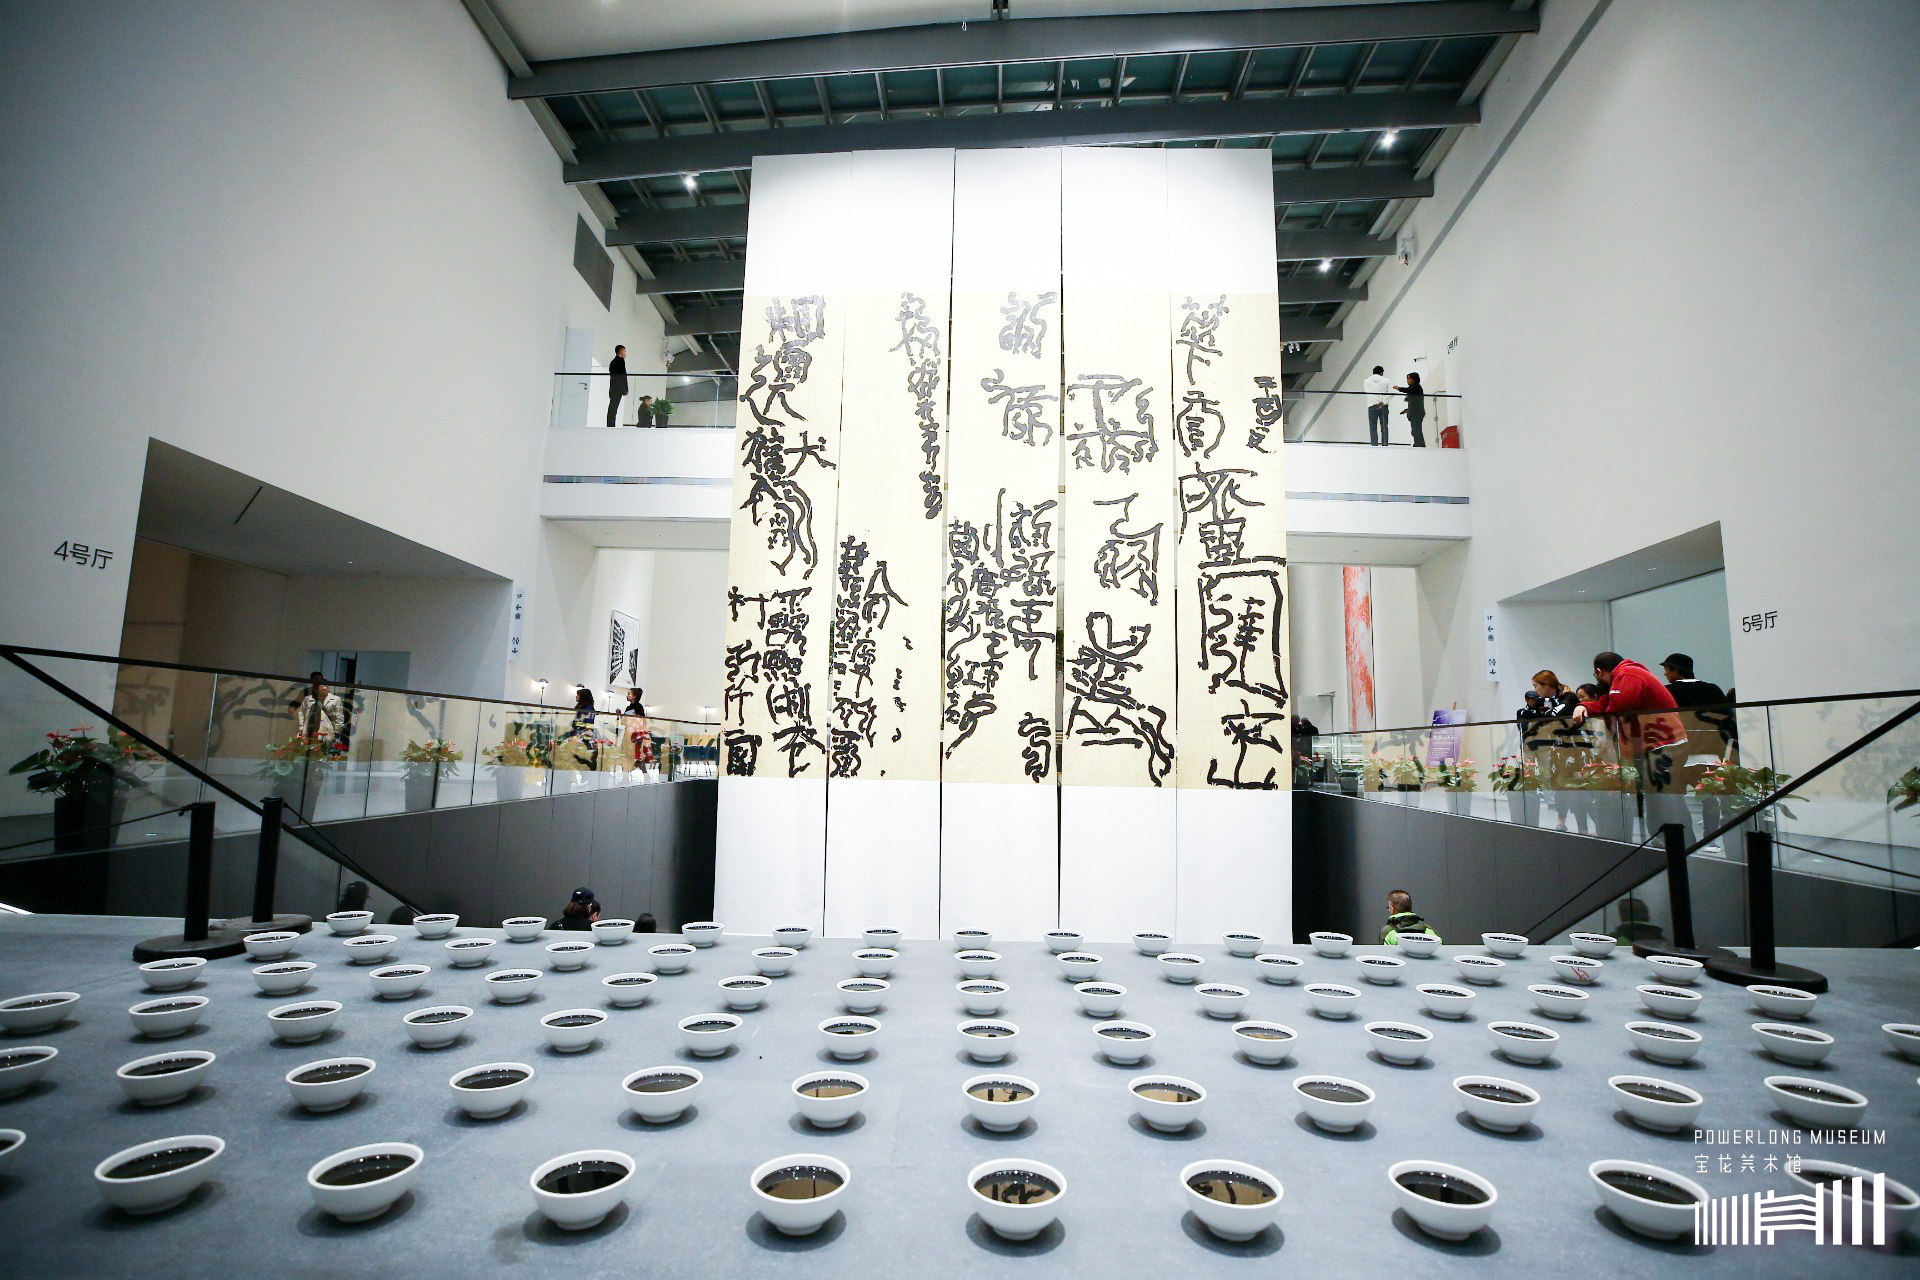 上海宝龙美术馆开馆 宝龙集团探索传承中华文化新高度